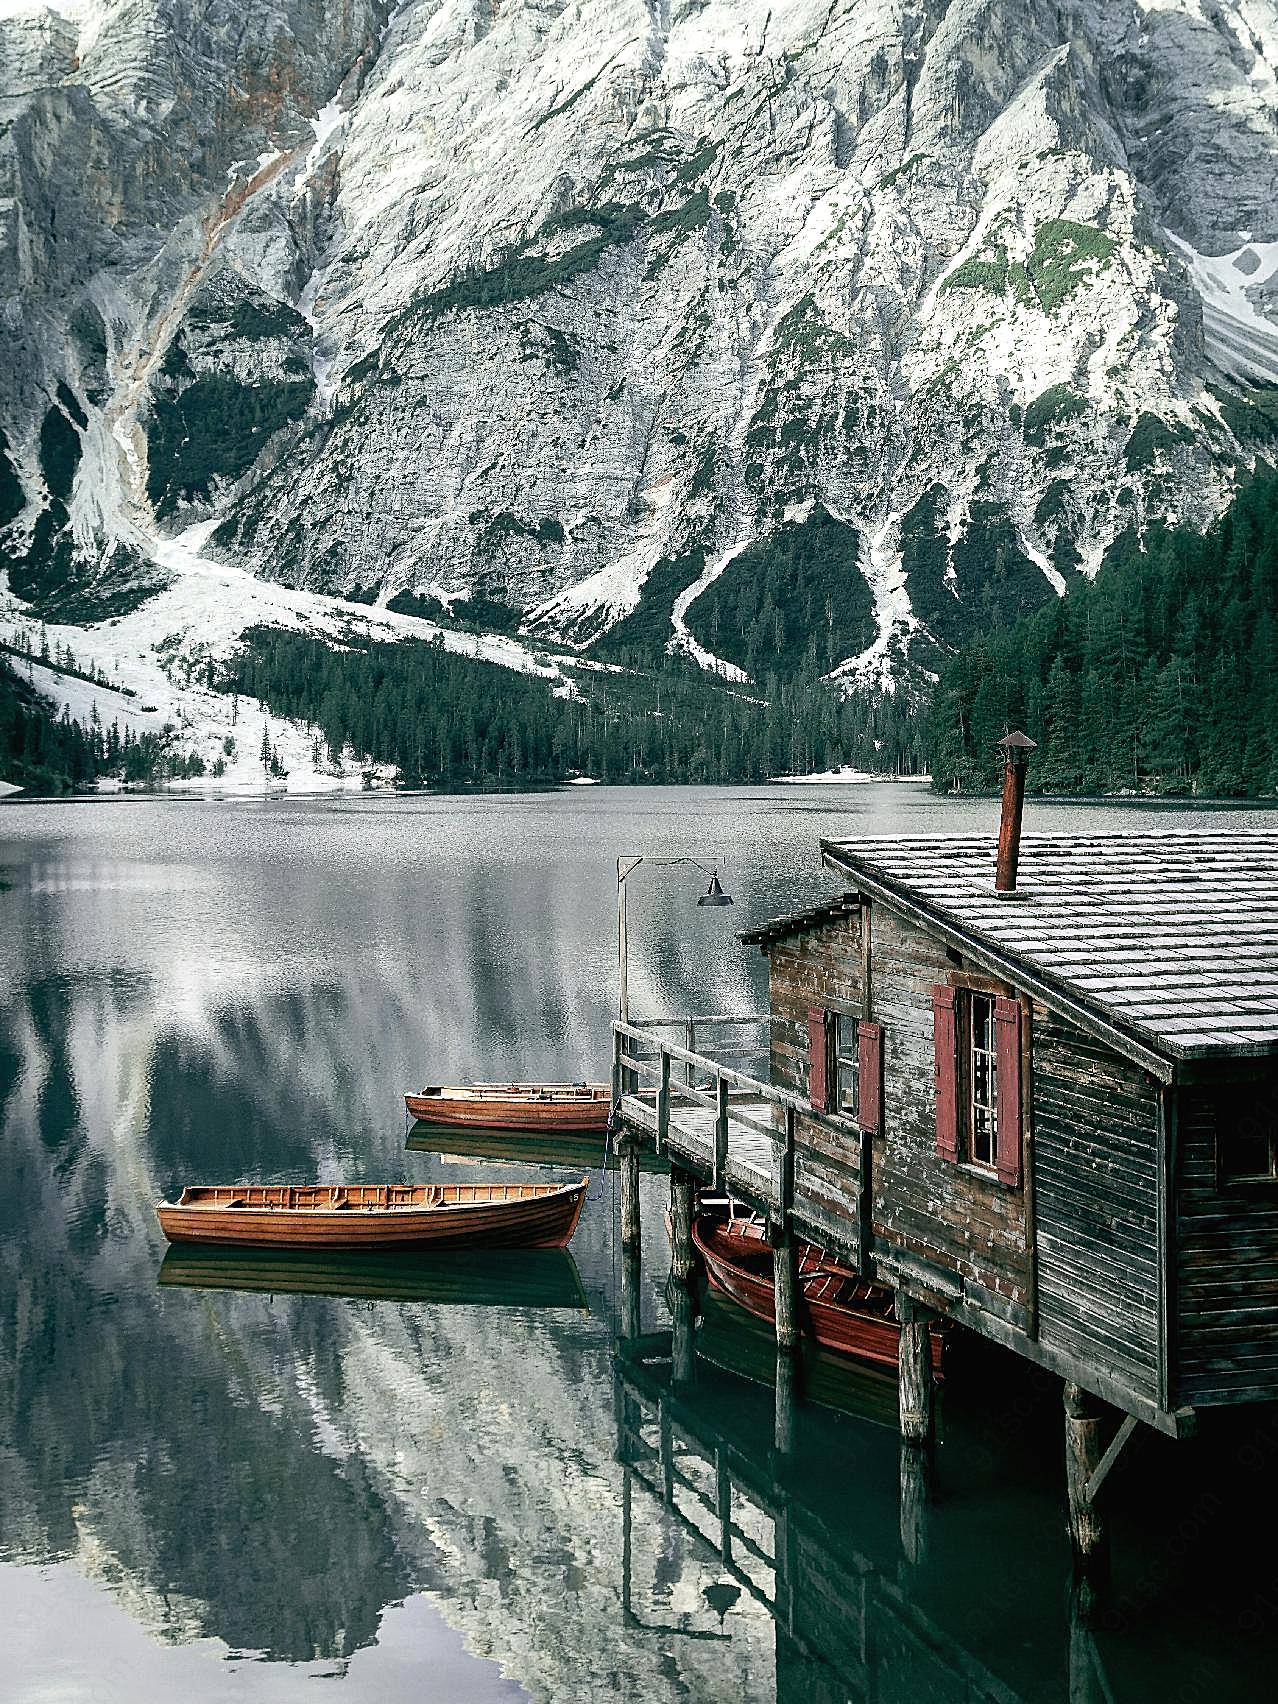 山水湖泊木屋风景图片自然风景